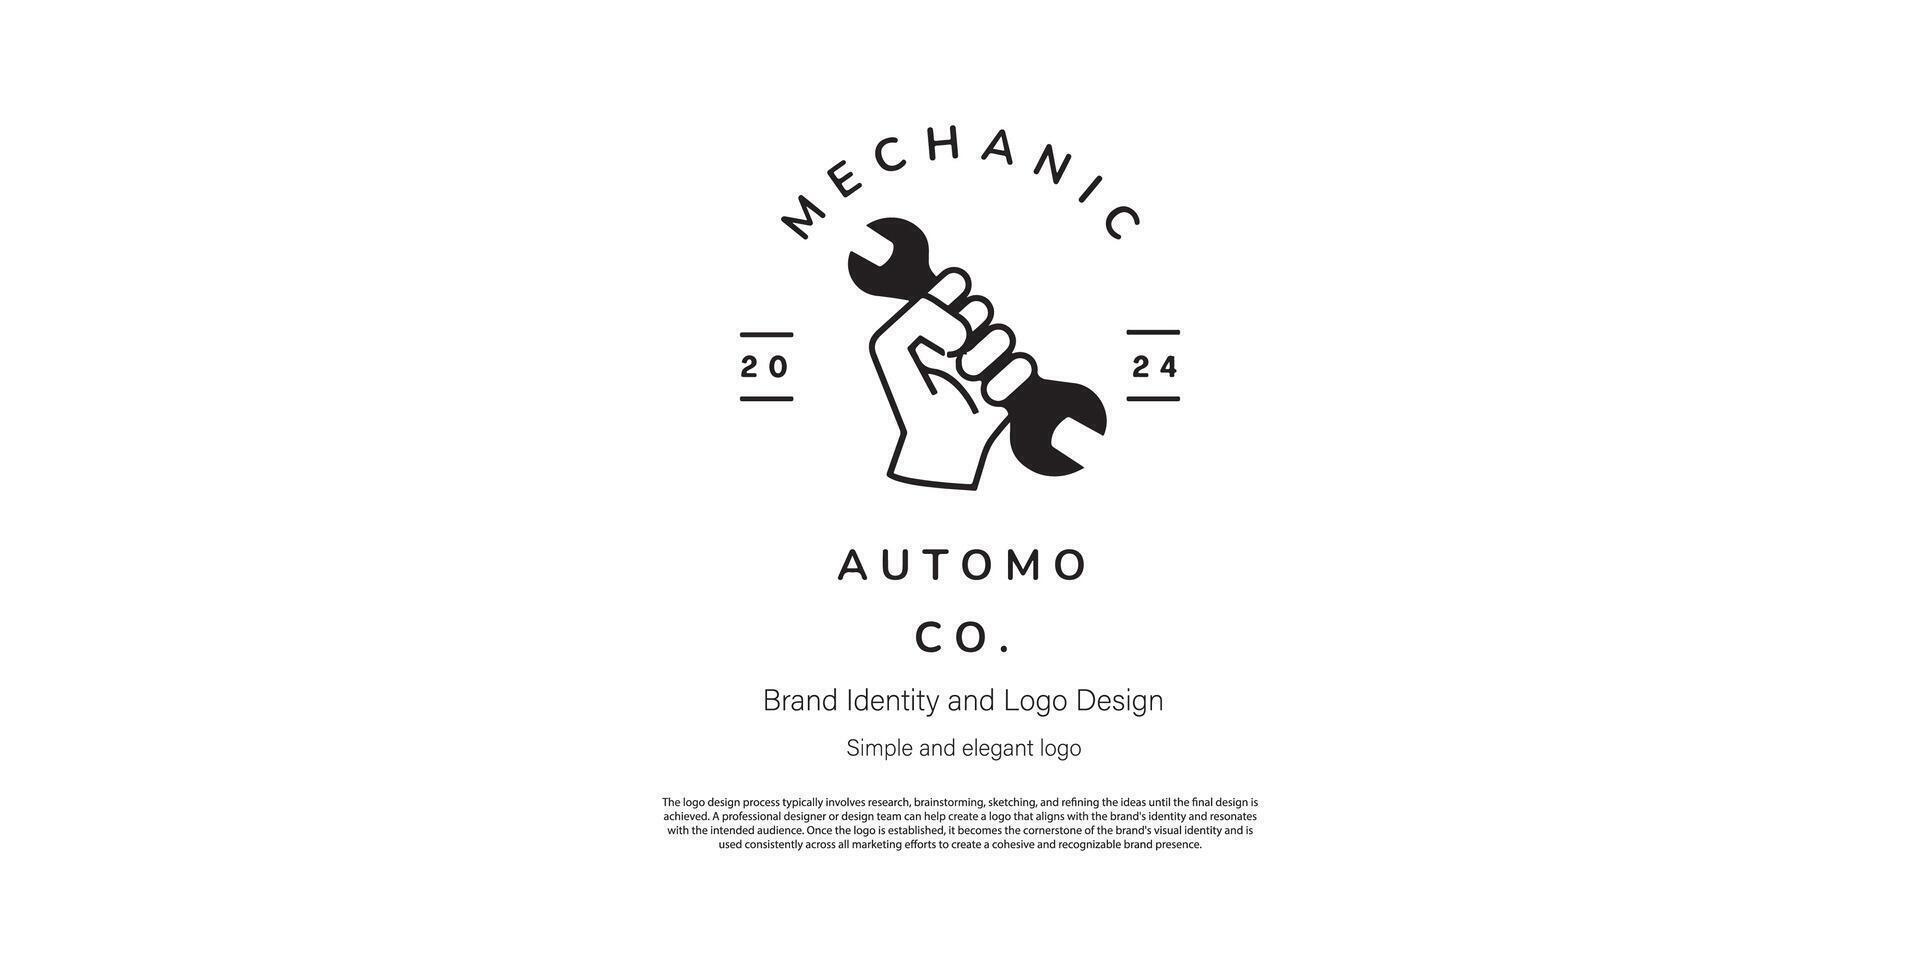 mechanical amd automotive logo design for logo designer or web developer vector